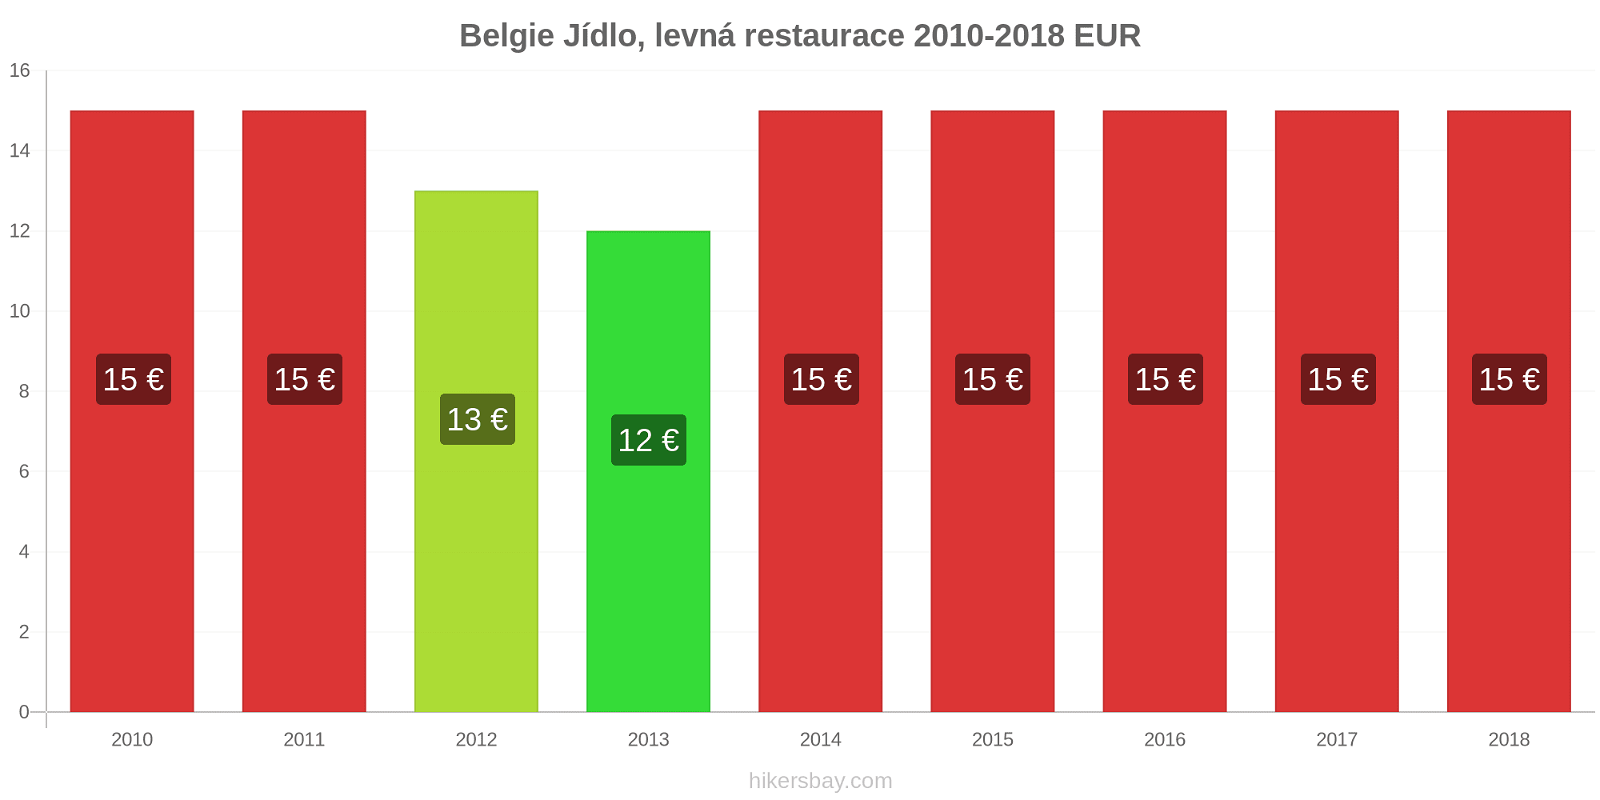 Belgie změny cen Jídlo v levné restauraci hikersbay.com